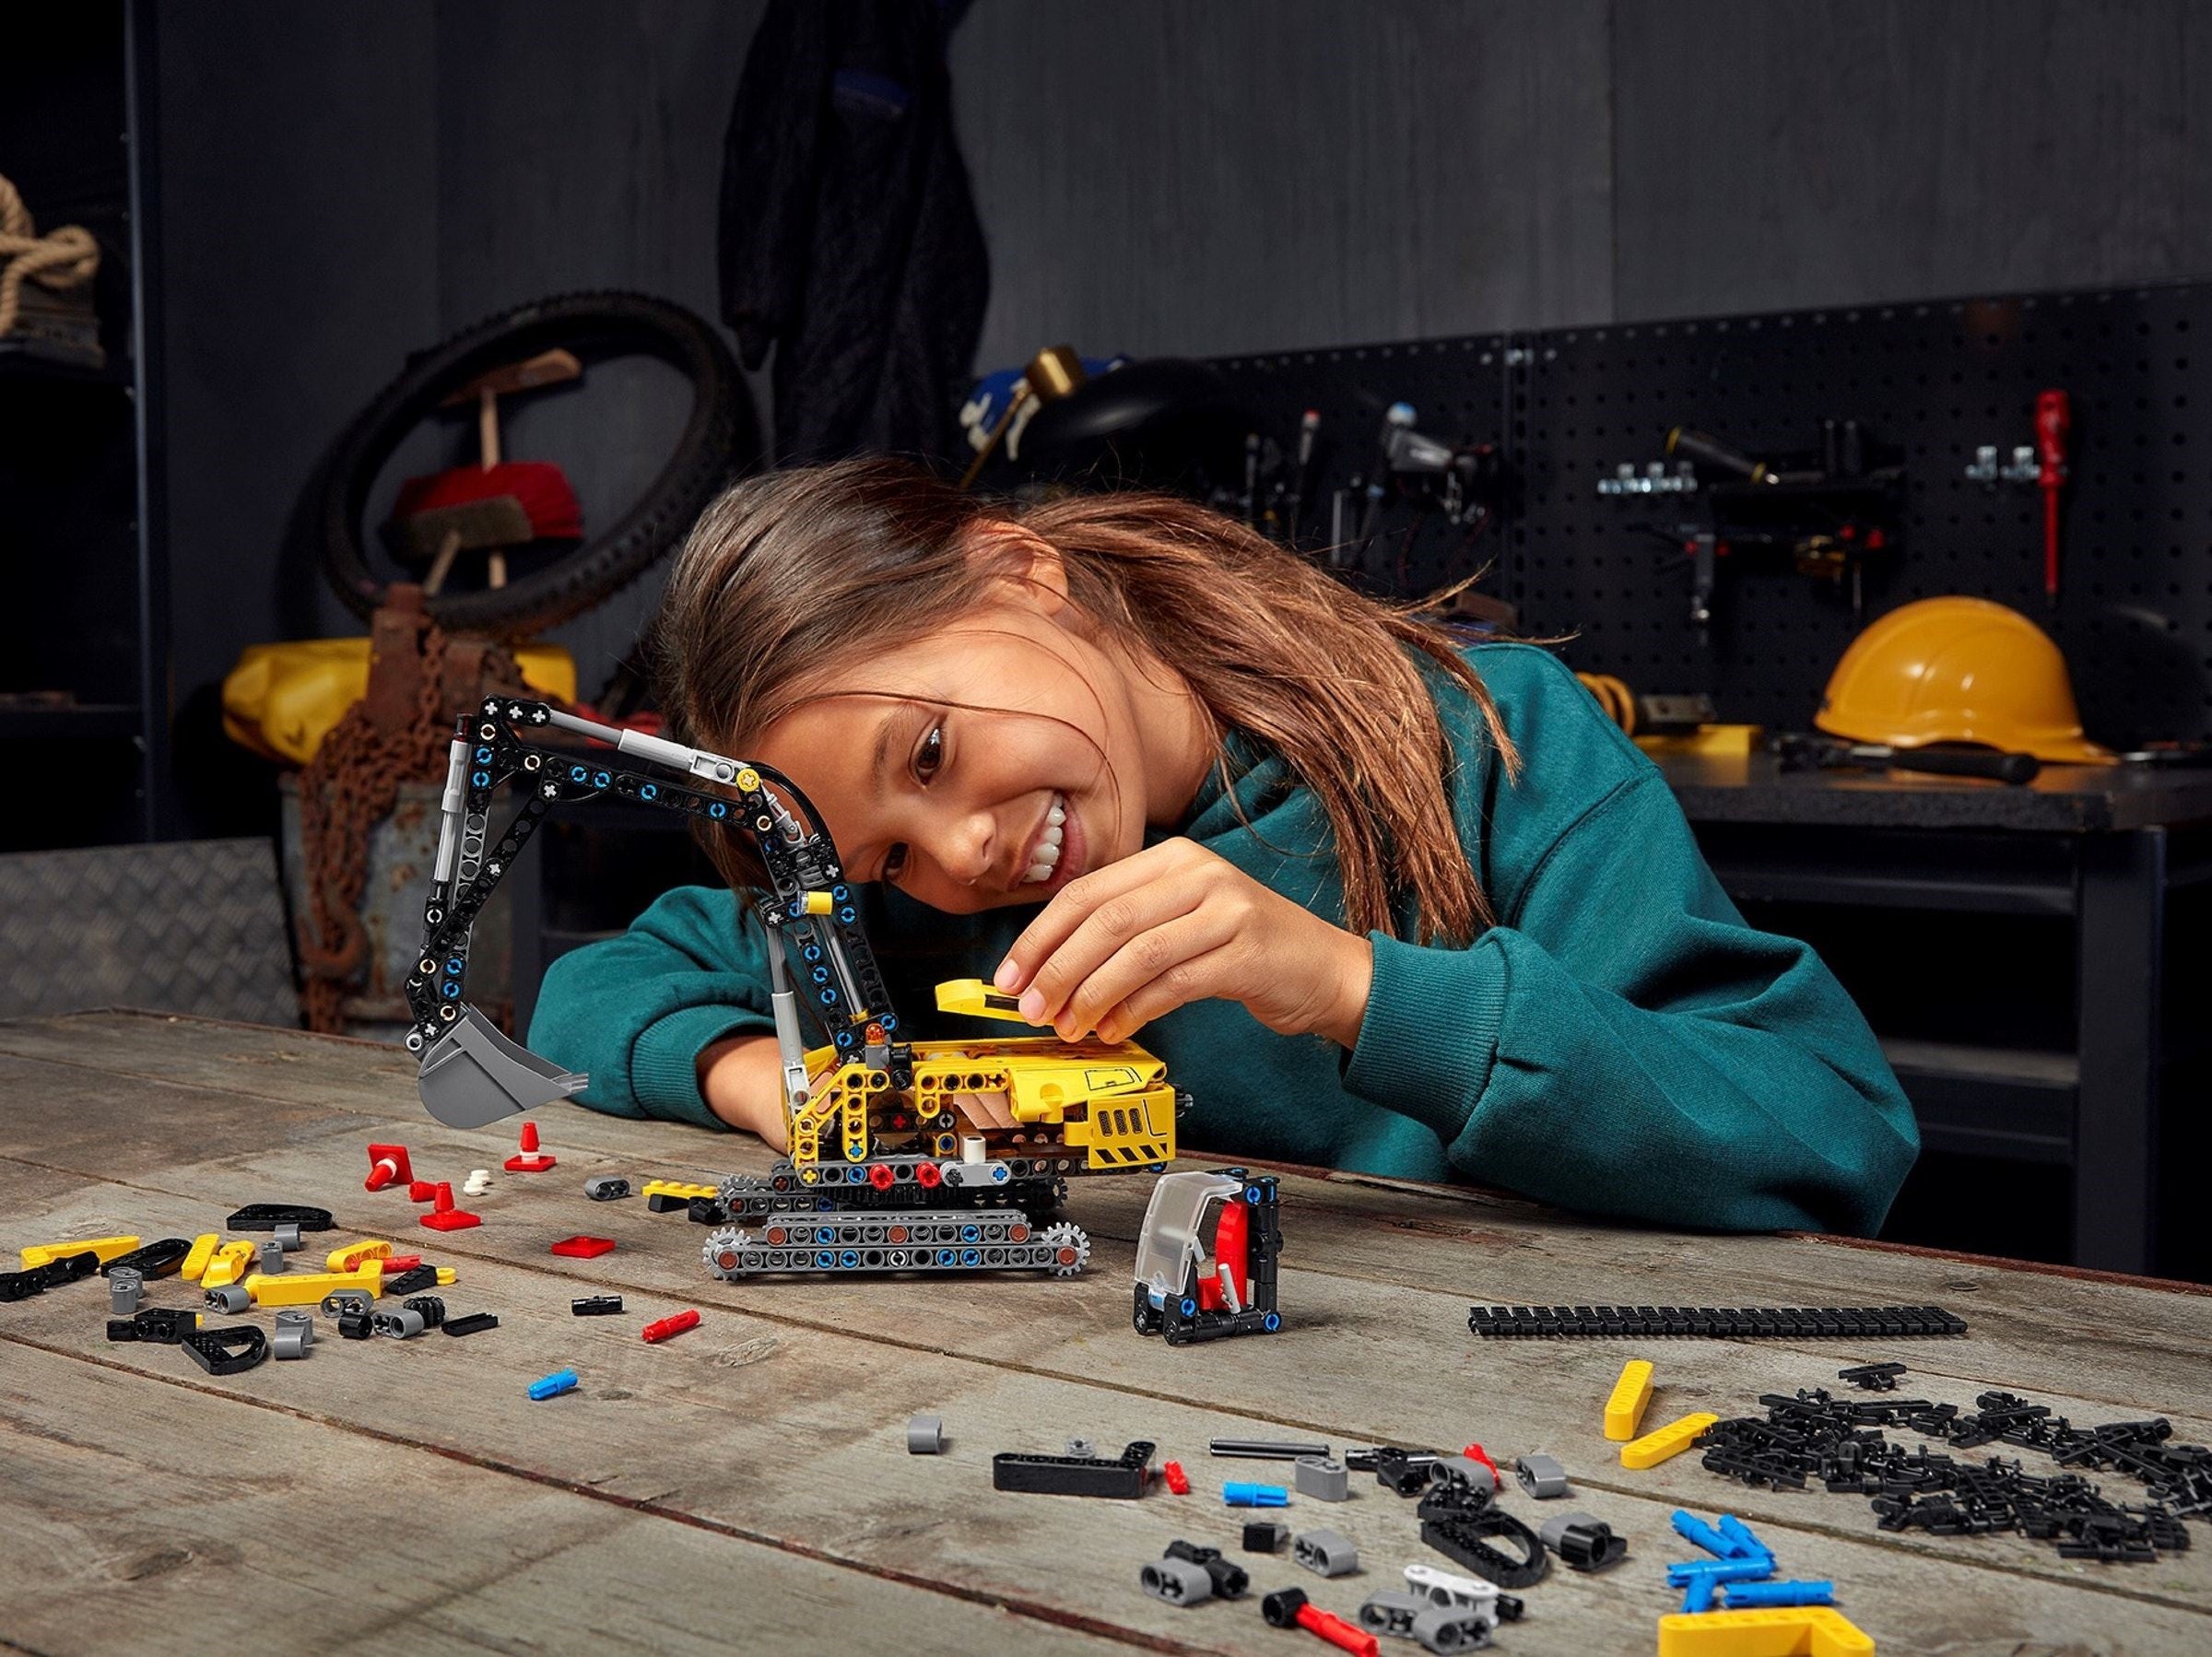 LEGO 42121 Heavy Duty Excavator